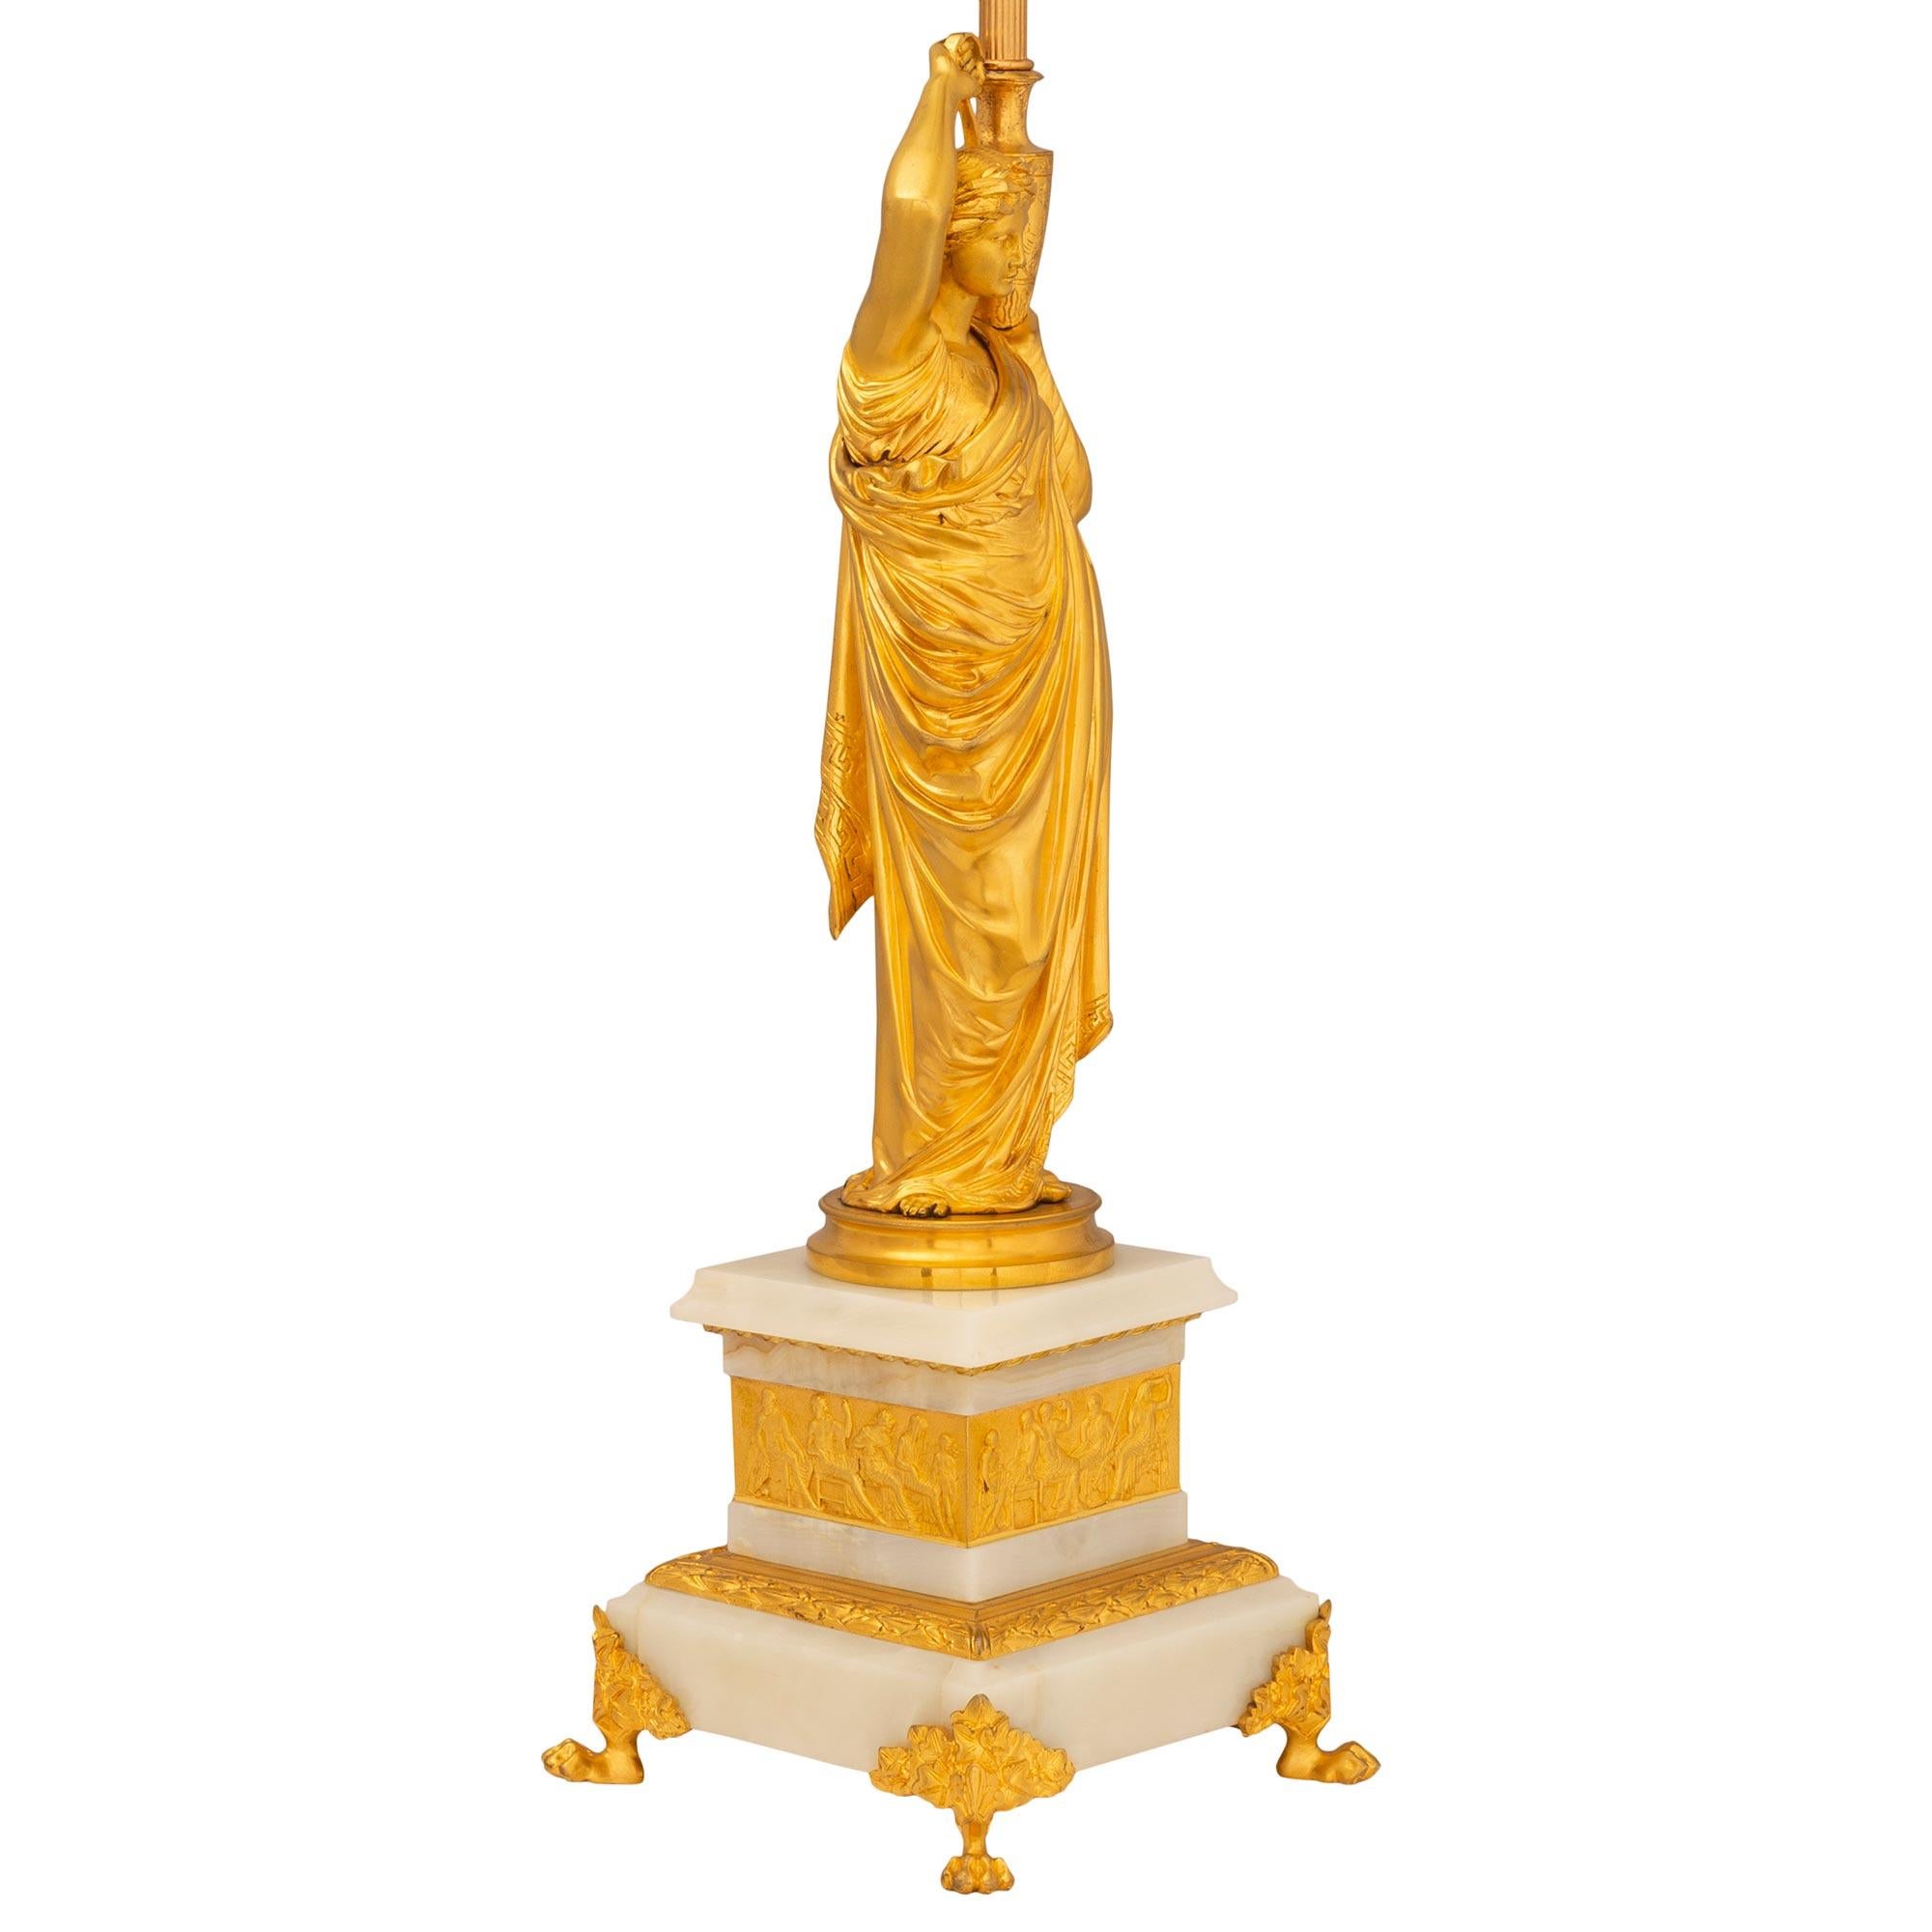 Une superbe paire de lampes néo-classiques françaises du 19ème siècle en bronze doré et onyx. Chaque lampe élégante est surélevée par une base carrée en onyx avec quatre beaux pieds en patte équipés de montures en bronze doré. La base en onyx à